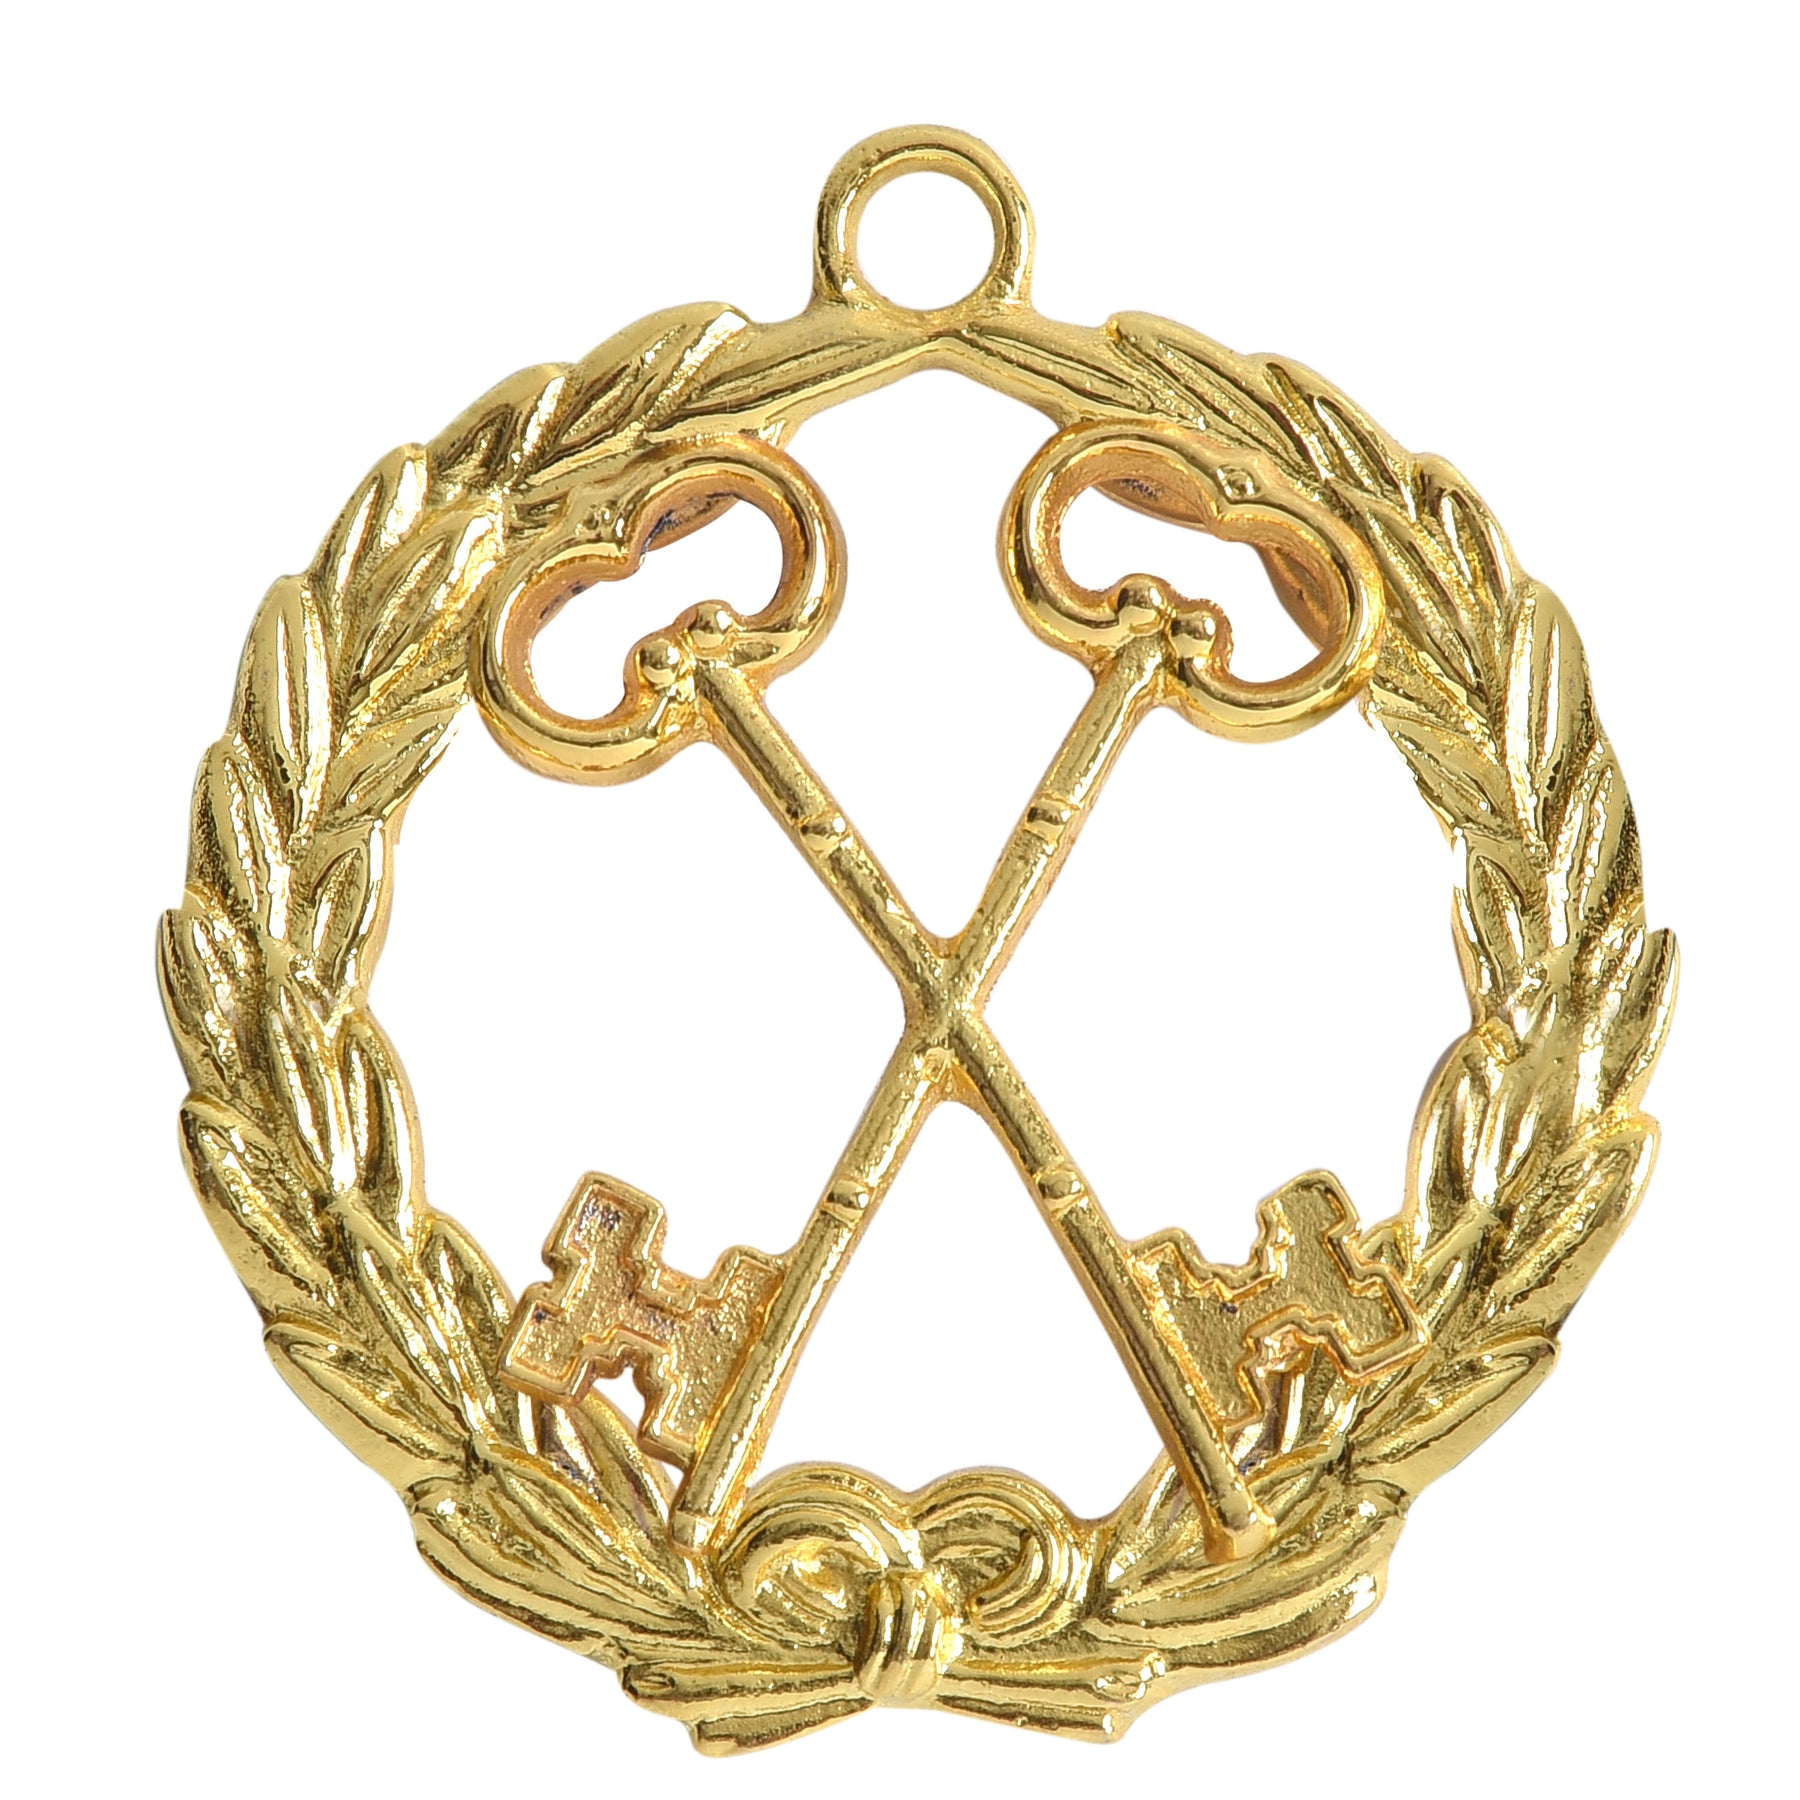 Grand Treasurer Knights Templar Commandery Officer Collar Jewel - Gold Plated - Bricks Masons